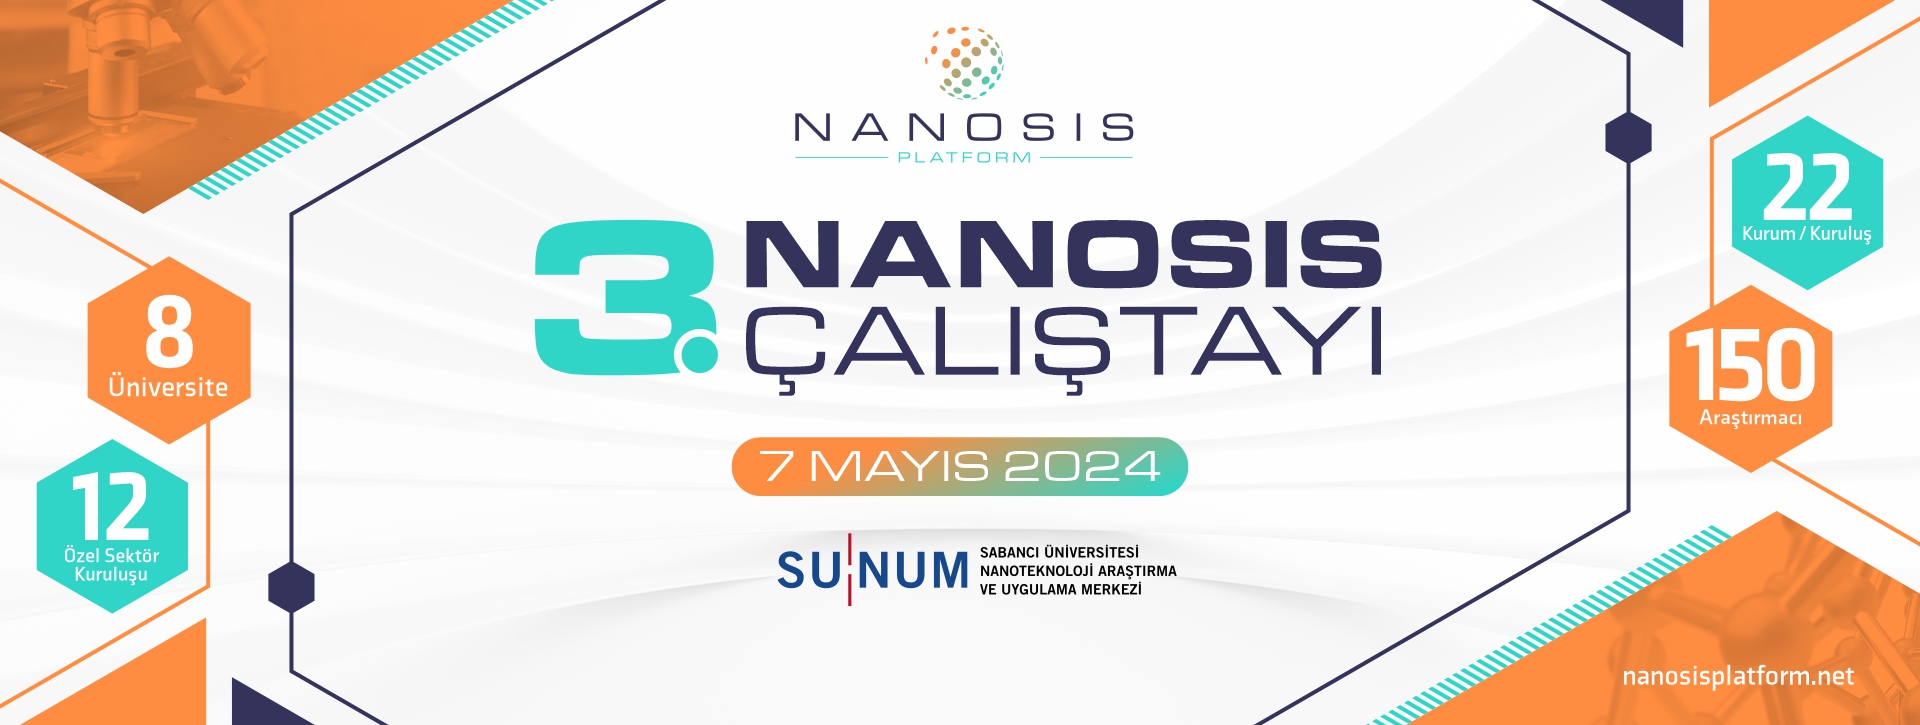 3. NANOSİS Çalıştayı, 7 Mayıs'ta düzenlenecek